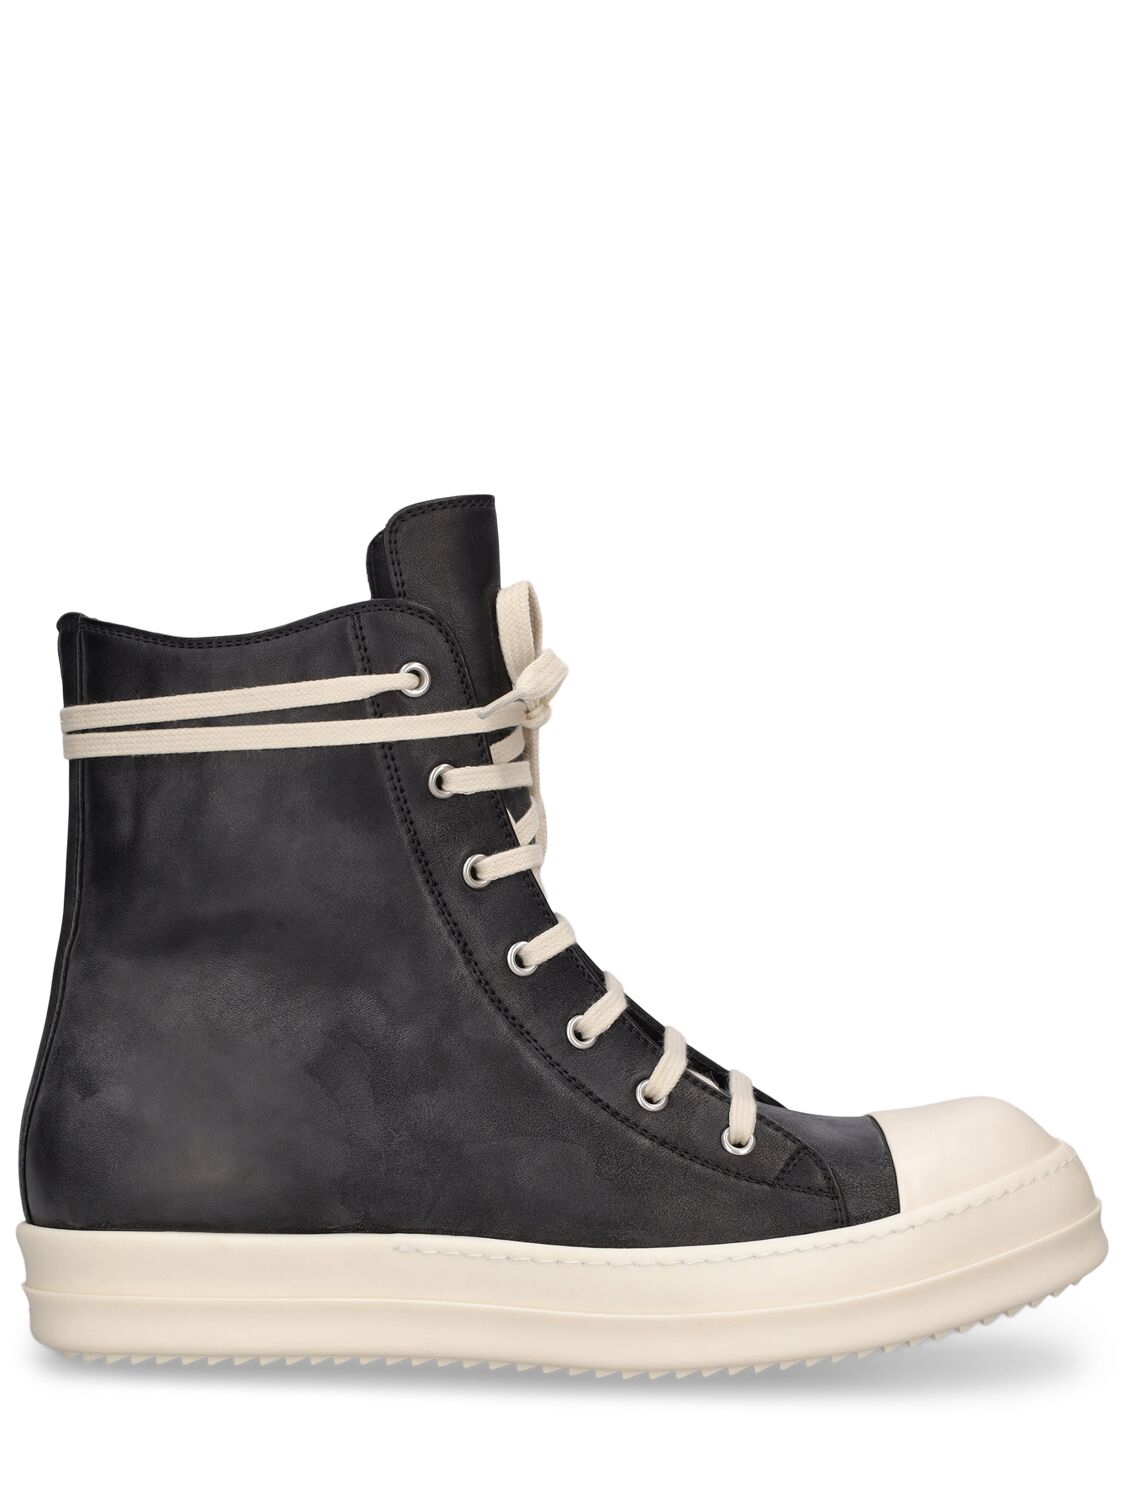 Shop Rick Owens Leather High Top Sneakers In Black,milk,milk